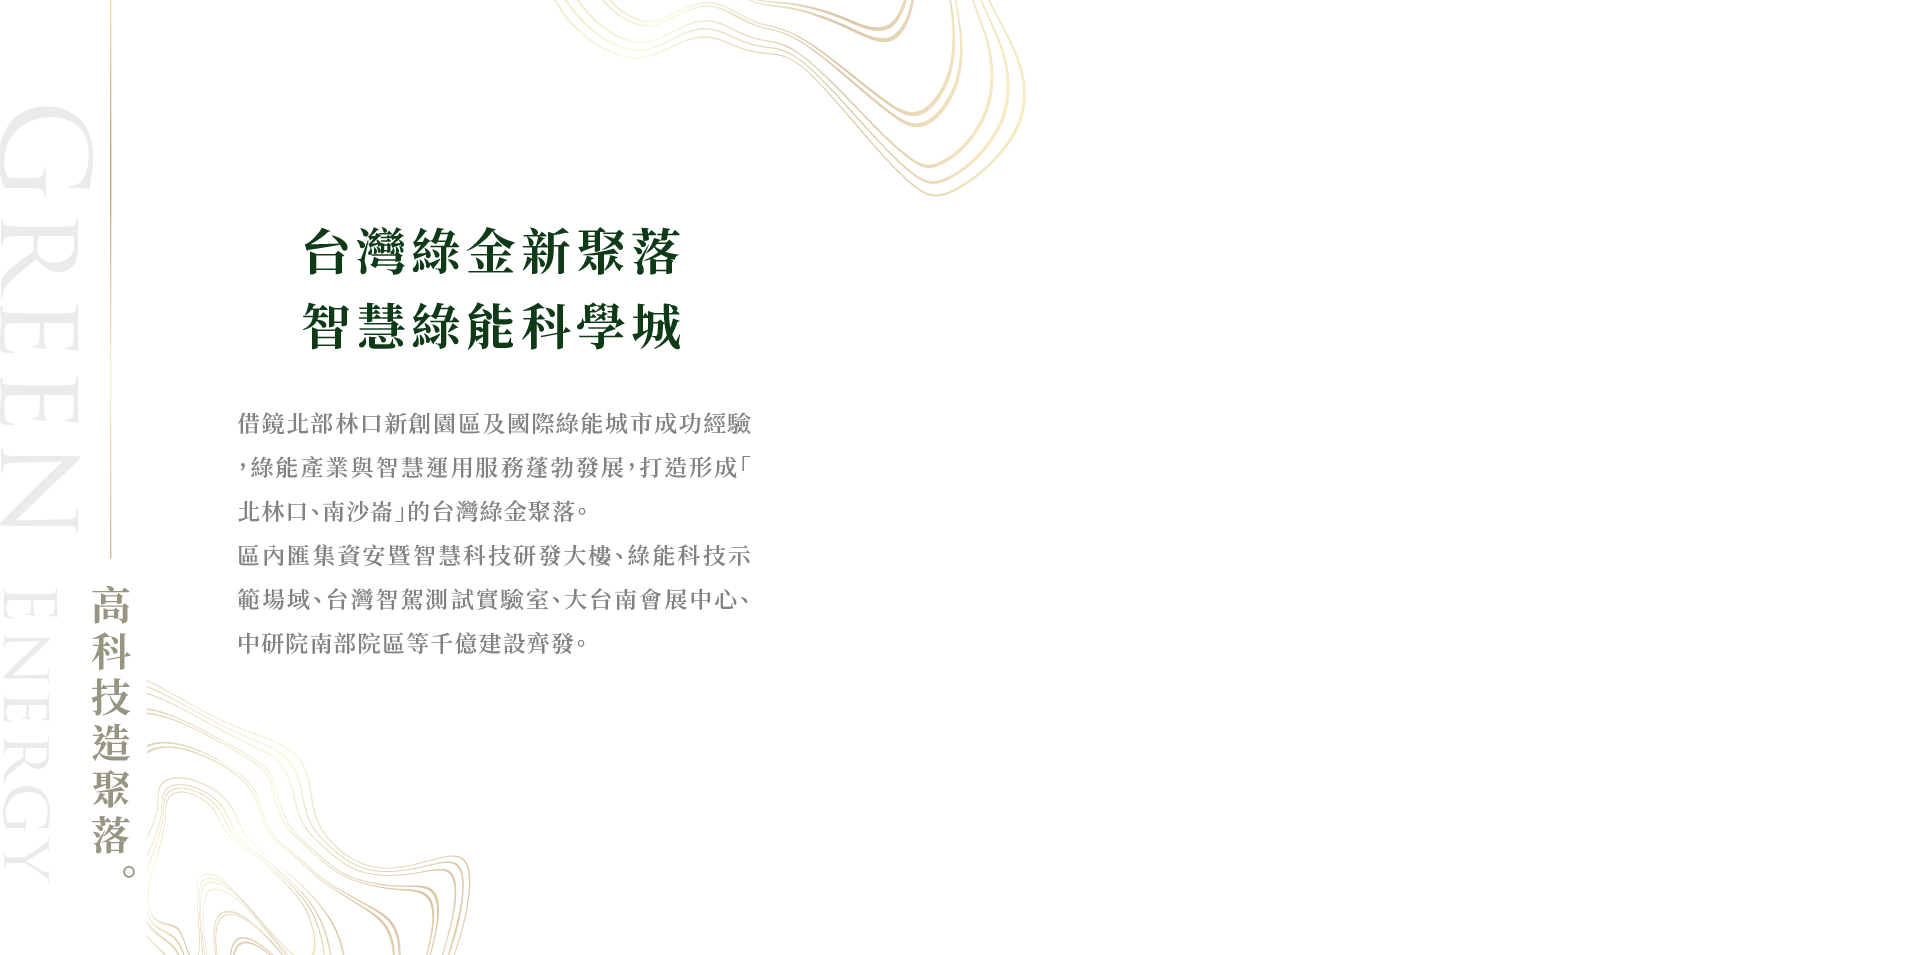 台灣綠金新聚落智慧綠能科學城